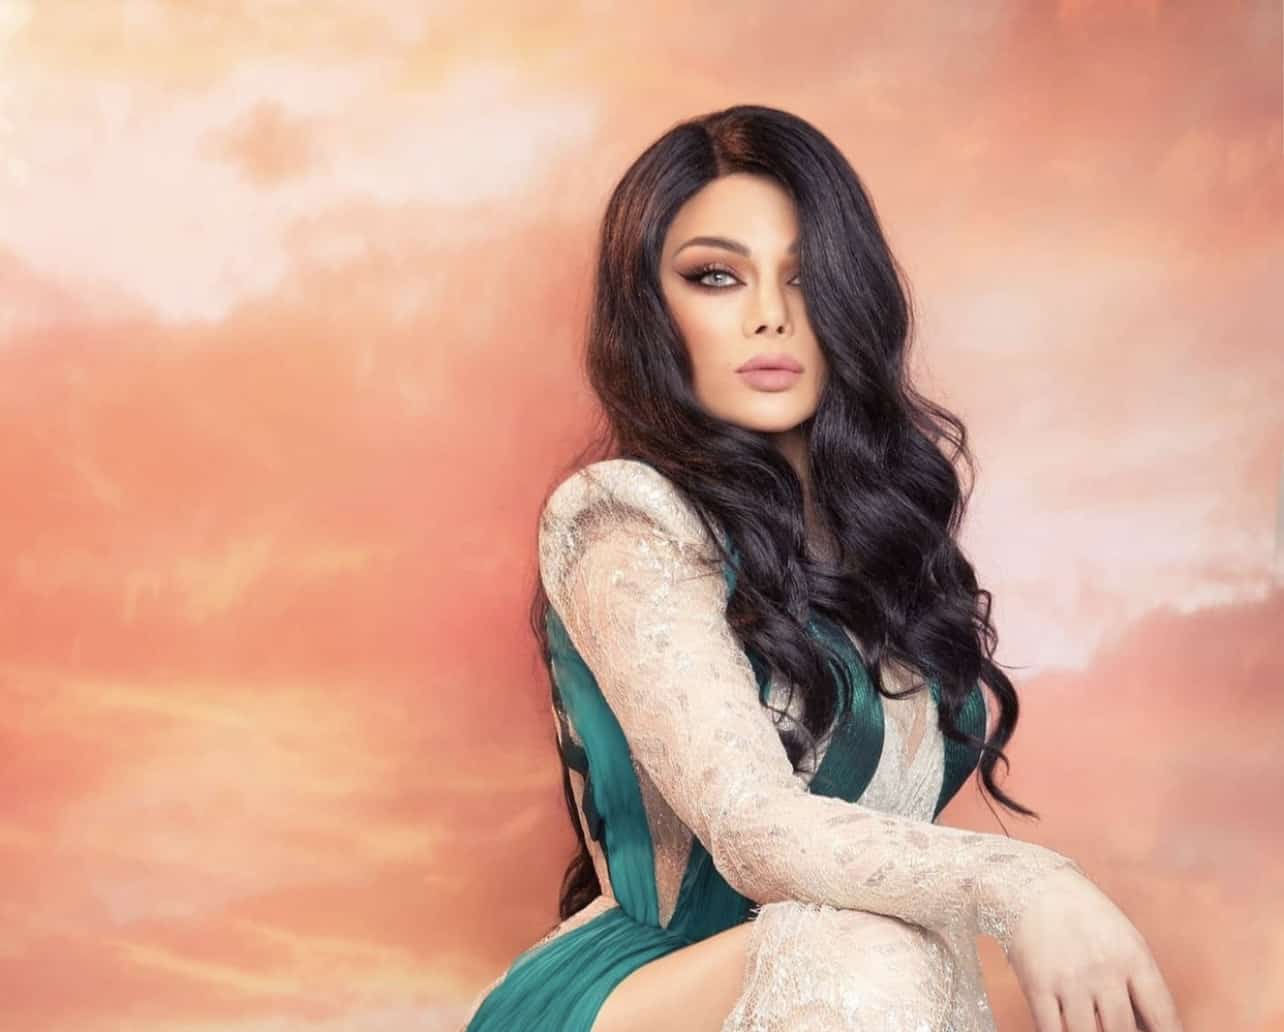 Haifa Wehbe 以埃及藝術家和非法歌曲引領潮流